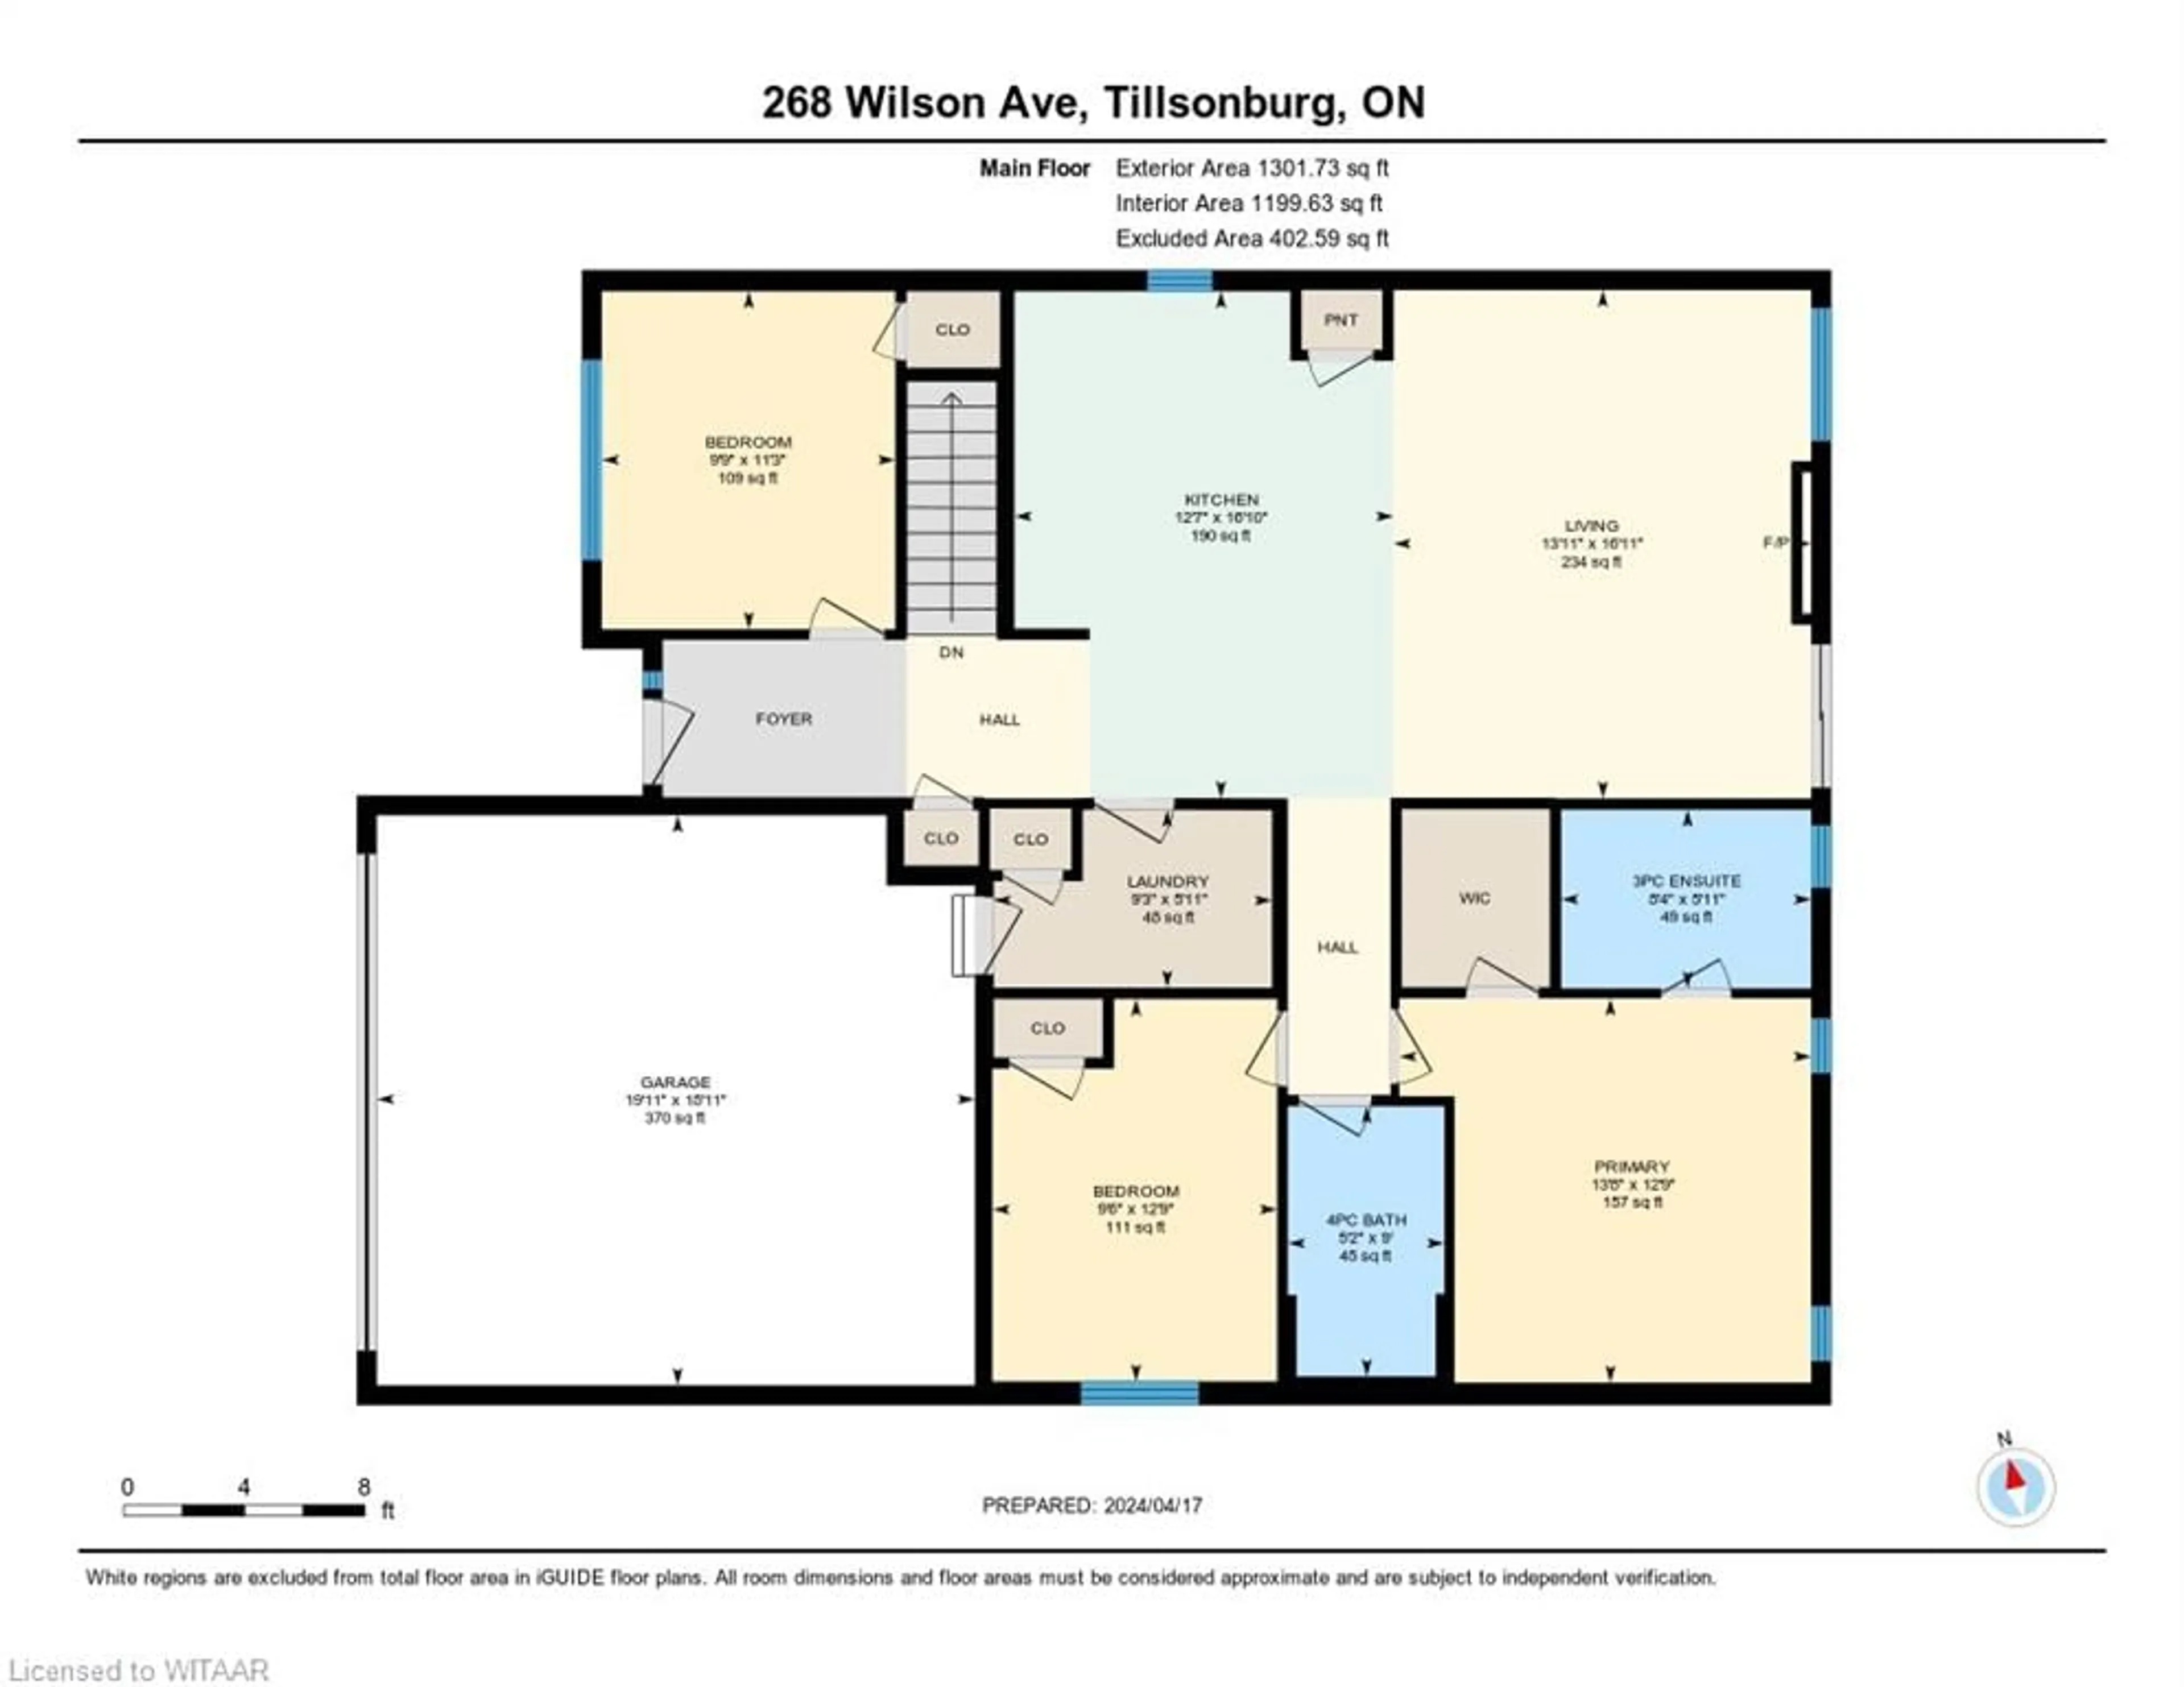 Floor plan for 268 Wilson Ave, Tillsonburg Ontario N4G 0H3